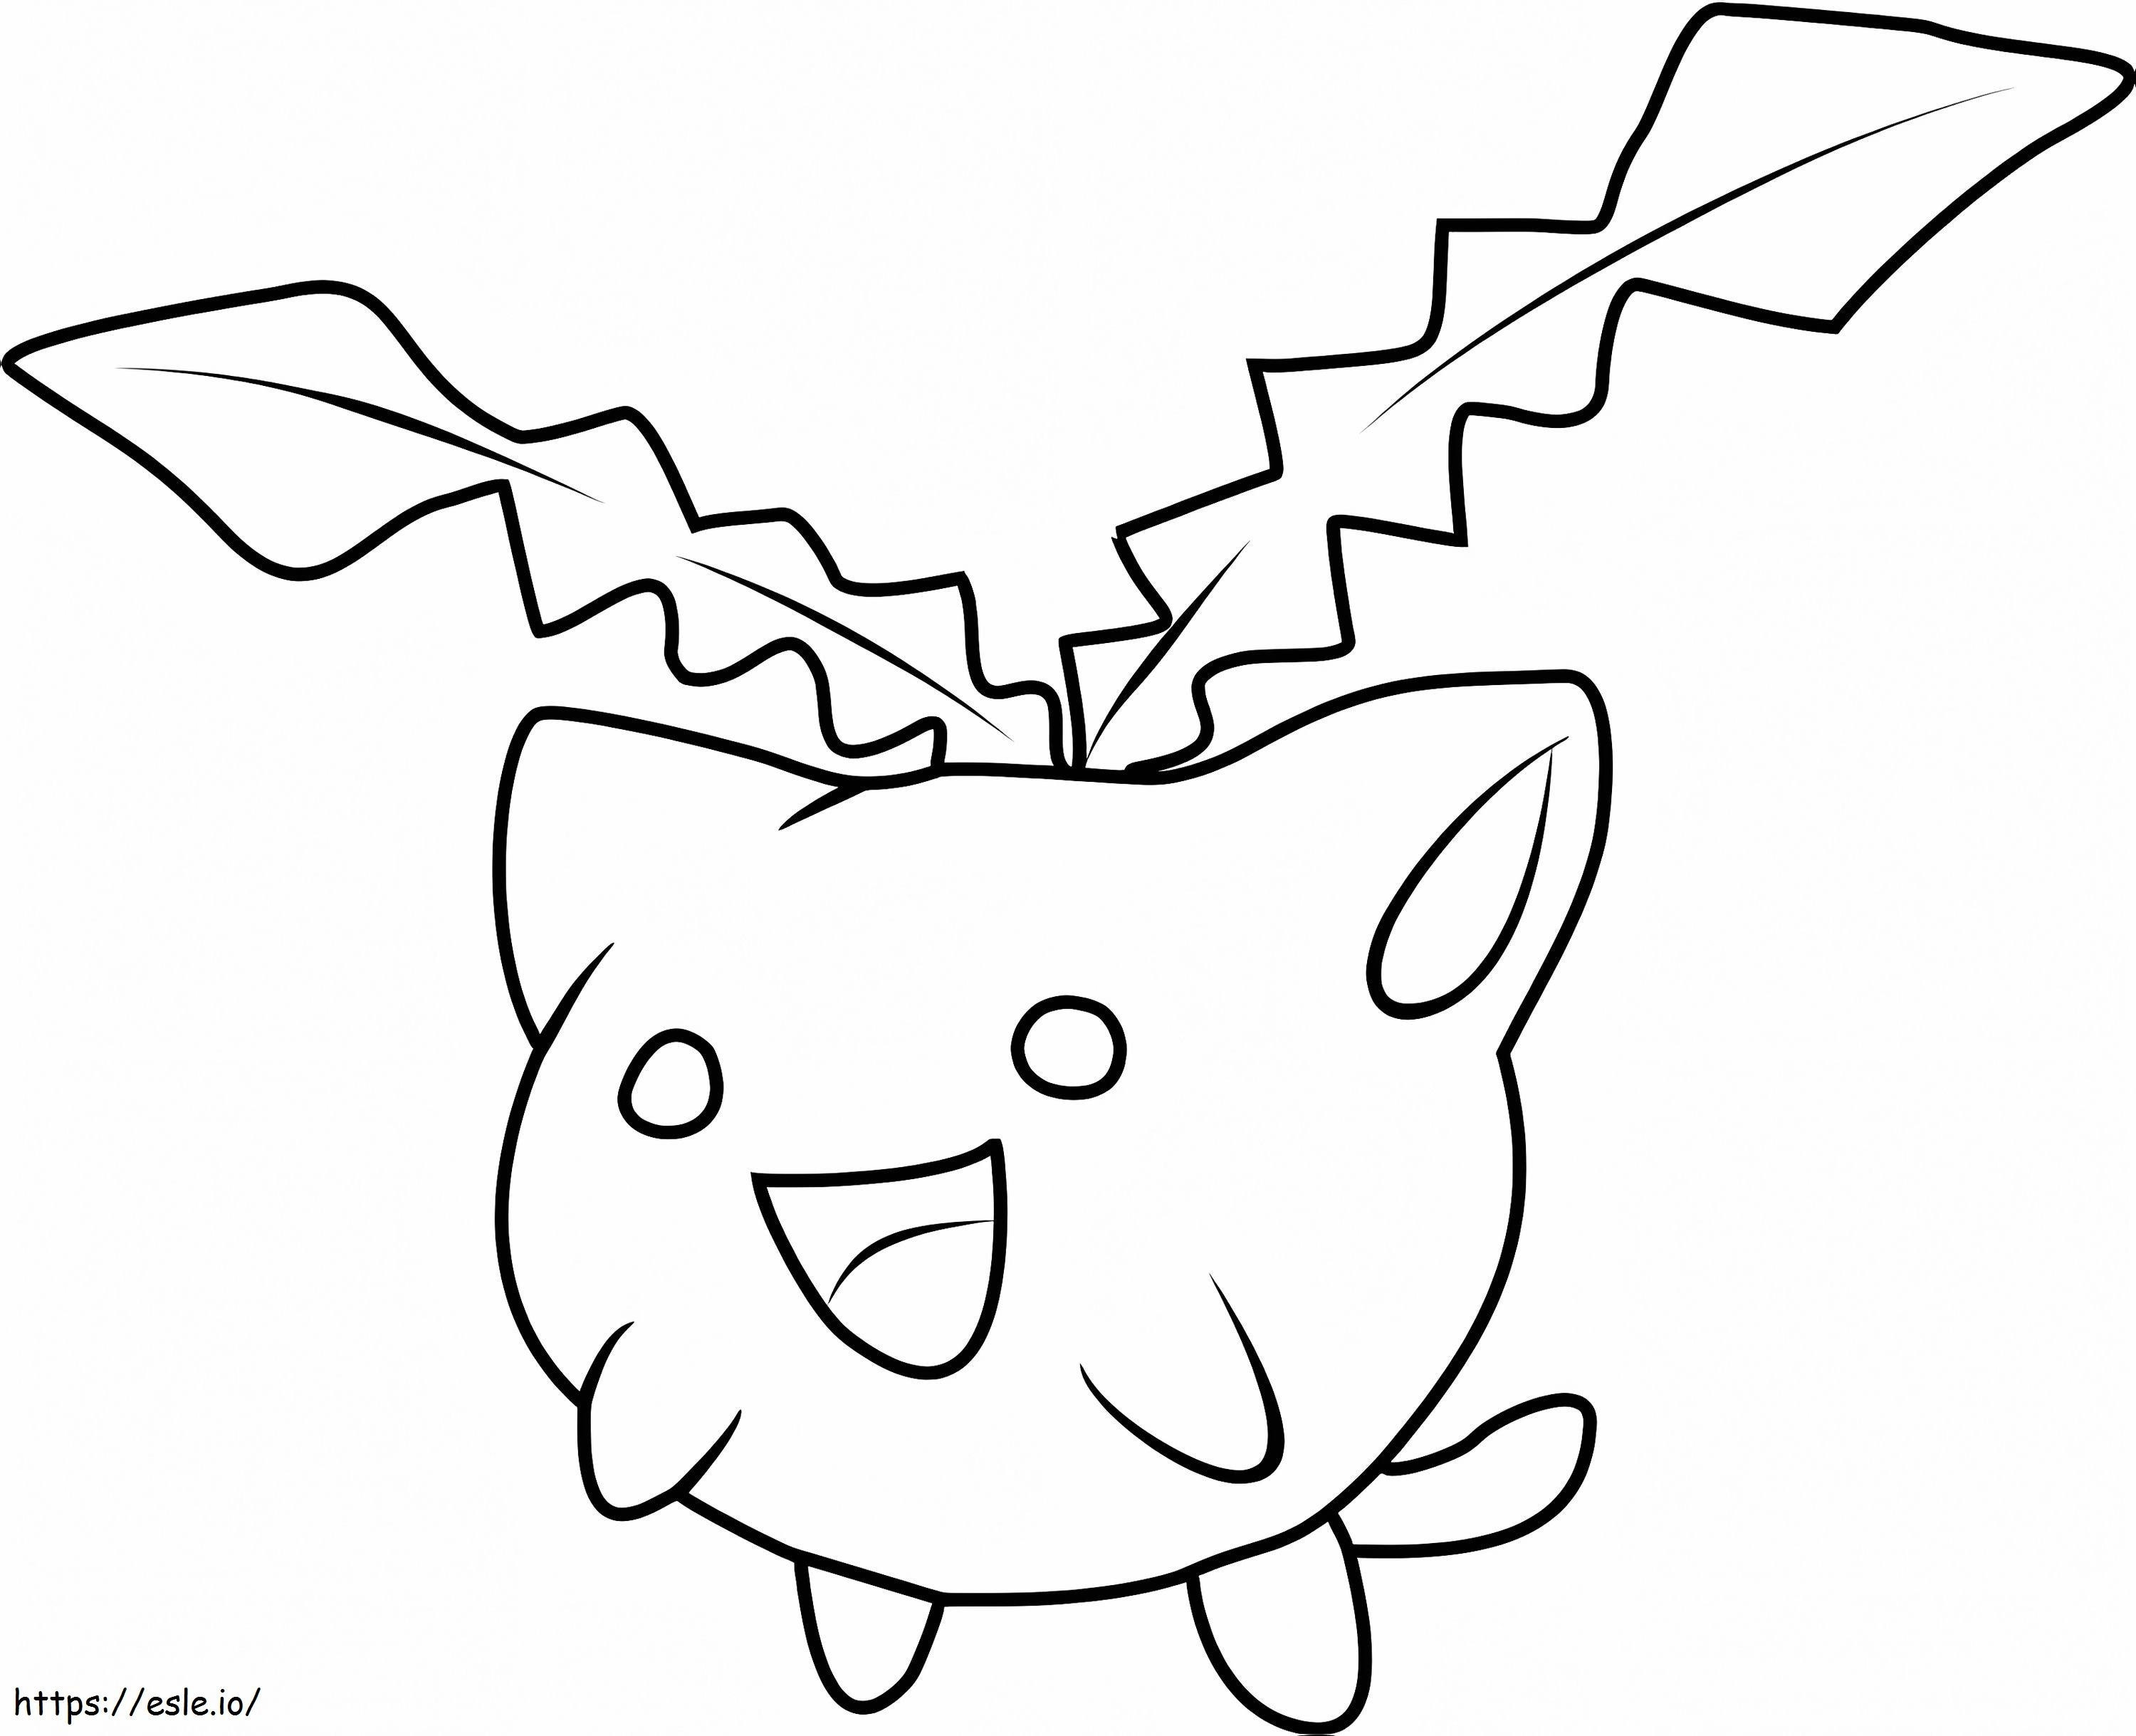 Coloriage Pokémon Hoppip Gen 2 à imprimer dessin